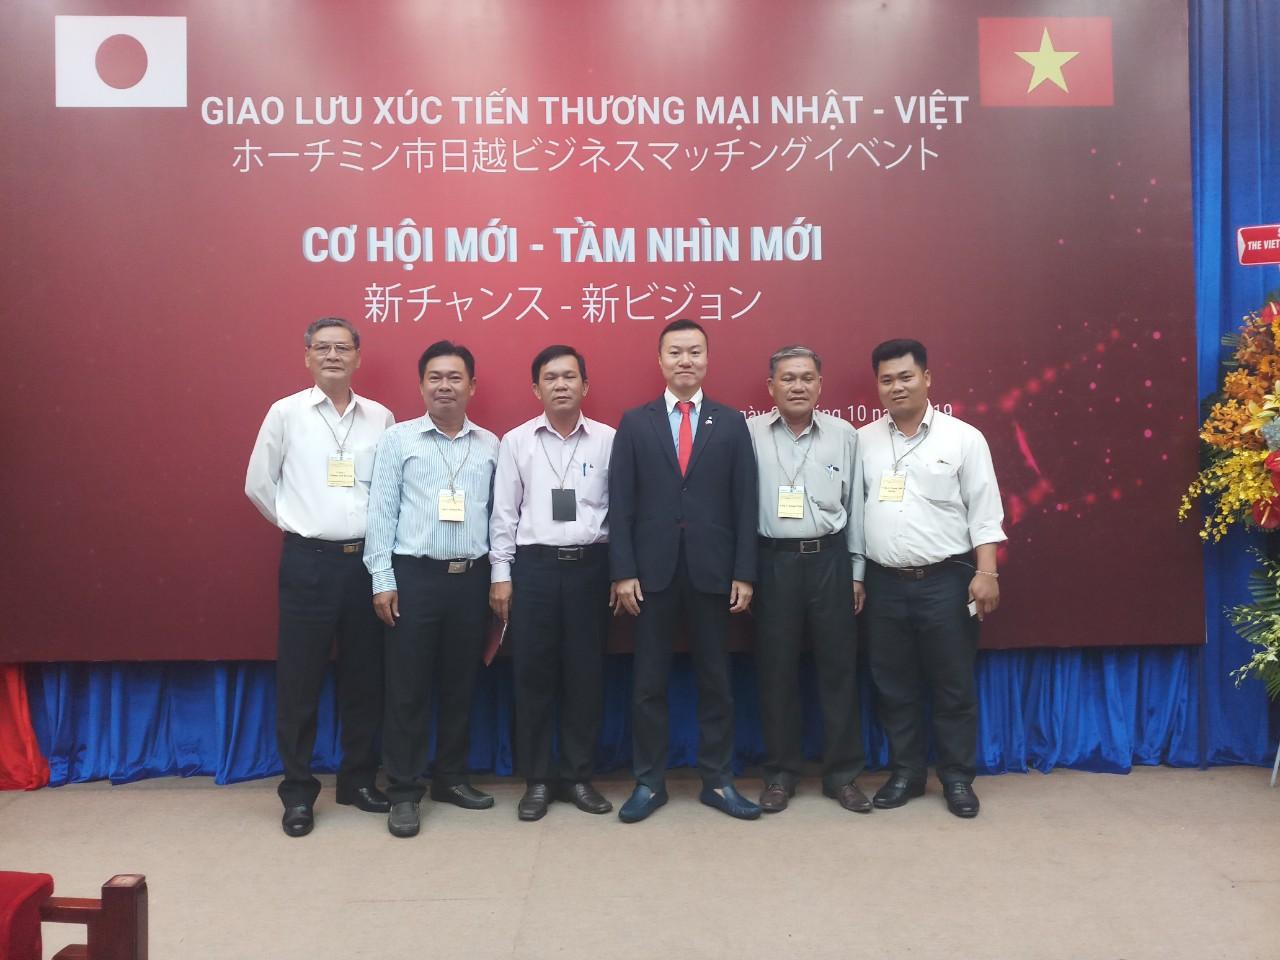 Đoàn doanh nghiệp tỉnh Long An dự hội nghị Giao lưu xúc tiến thương mại Nhật - Việt tại TPHCM